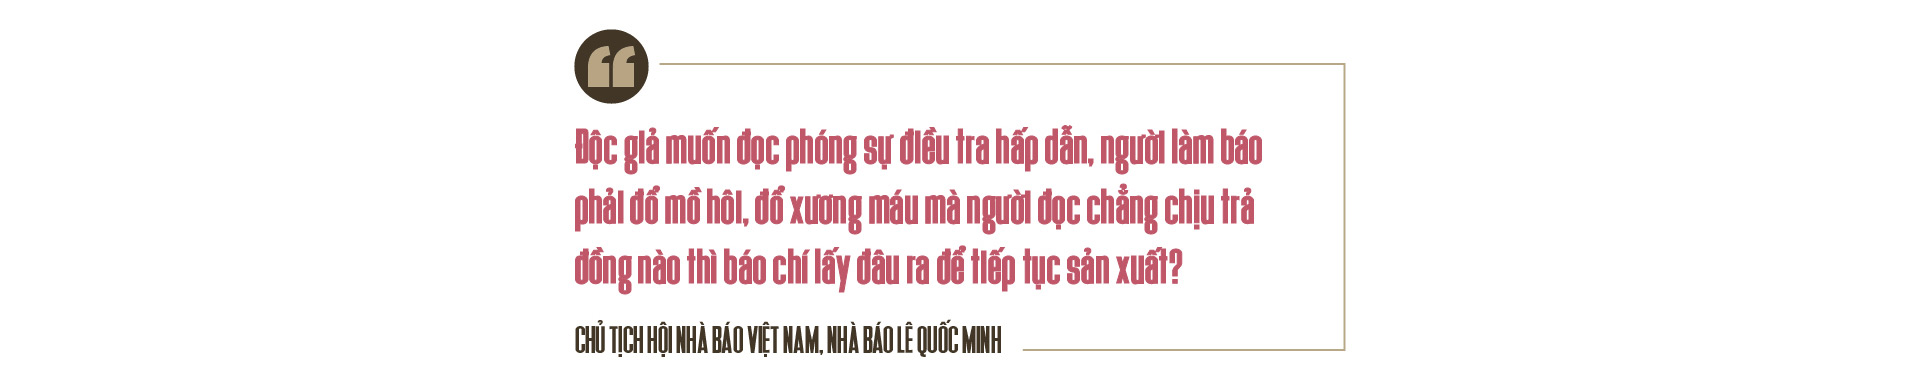 Nhà báo Lê Quốc Minh, Chủ tịch Hội Nhà báo Việt Nam: Khác biệt bằng tư duy và sáng tạo - Ảnh 10.